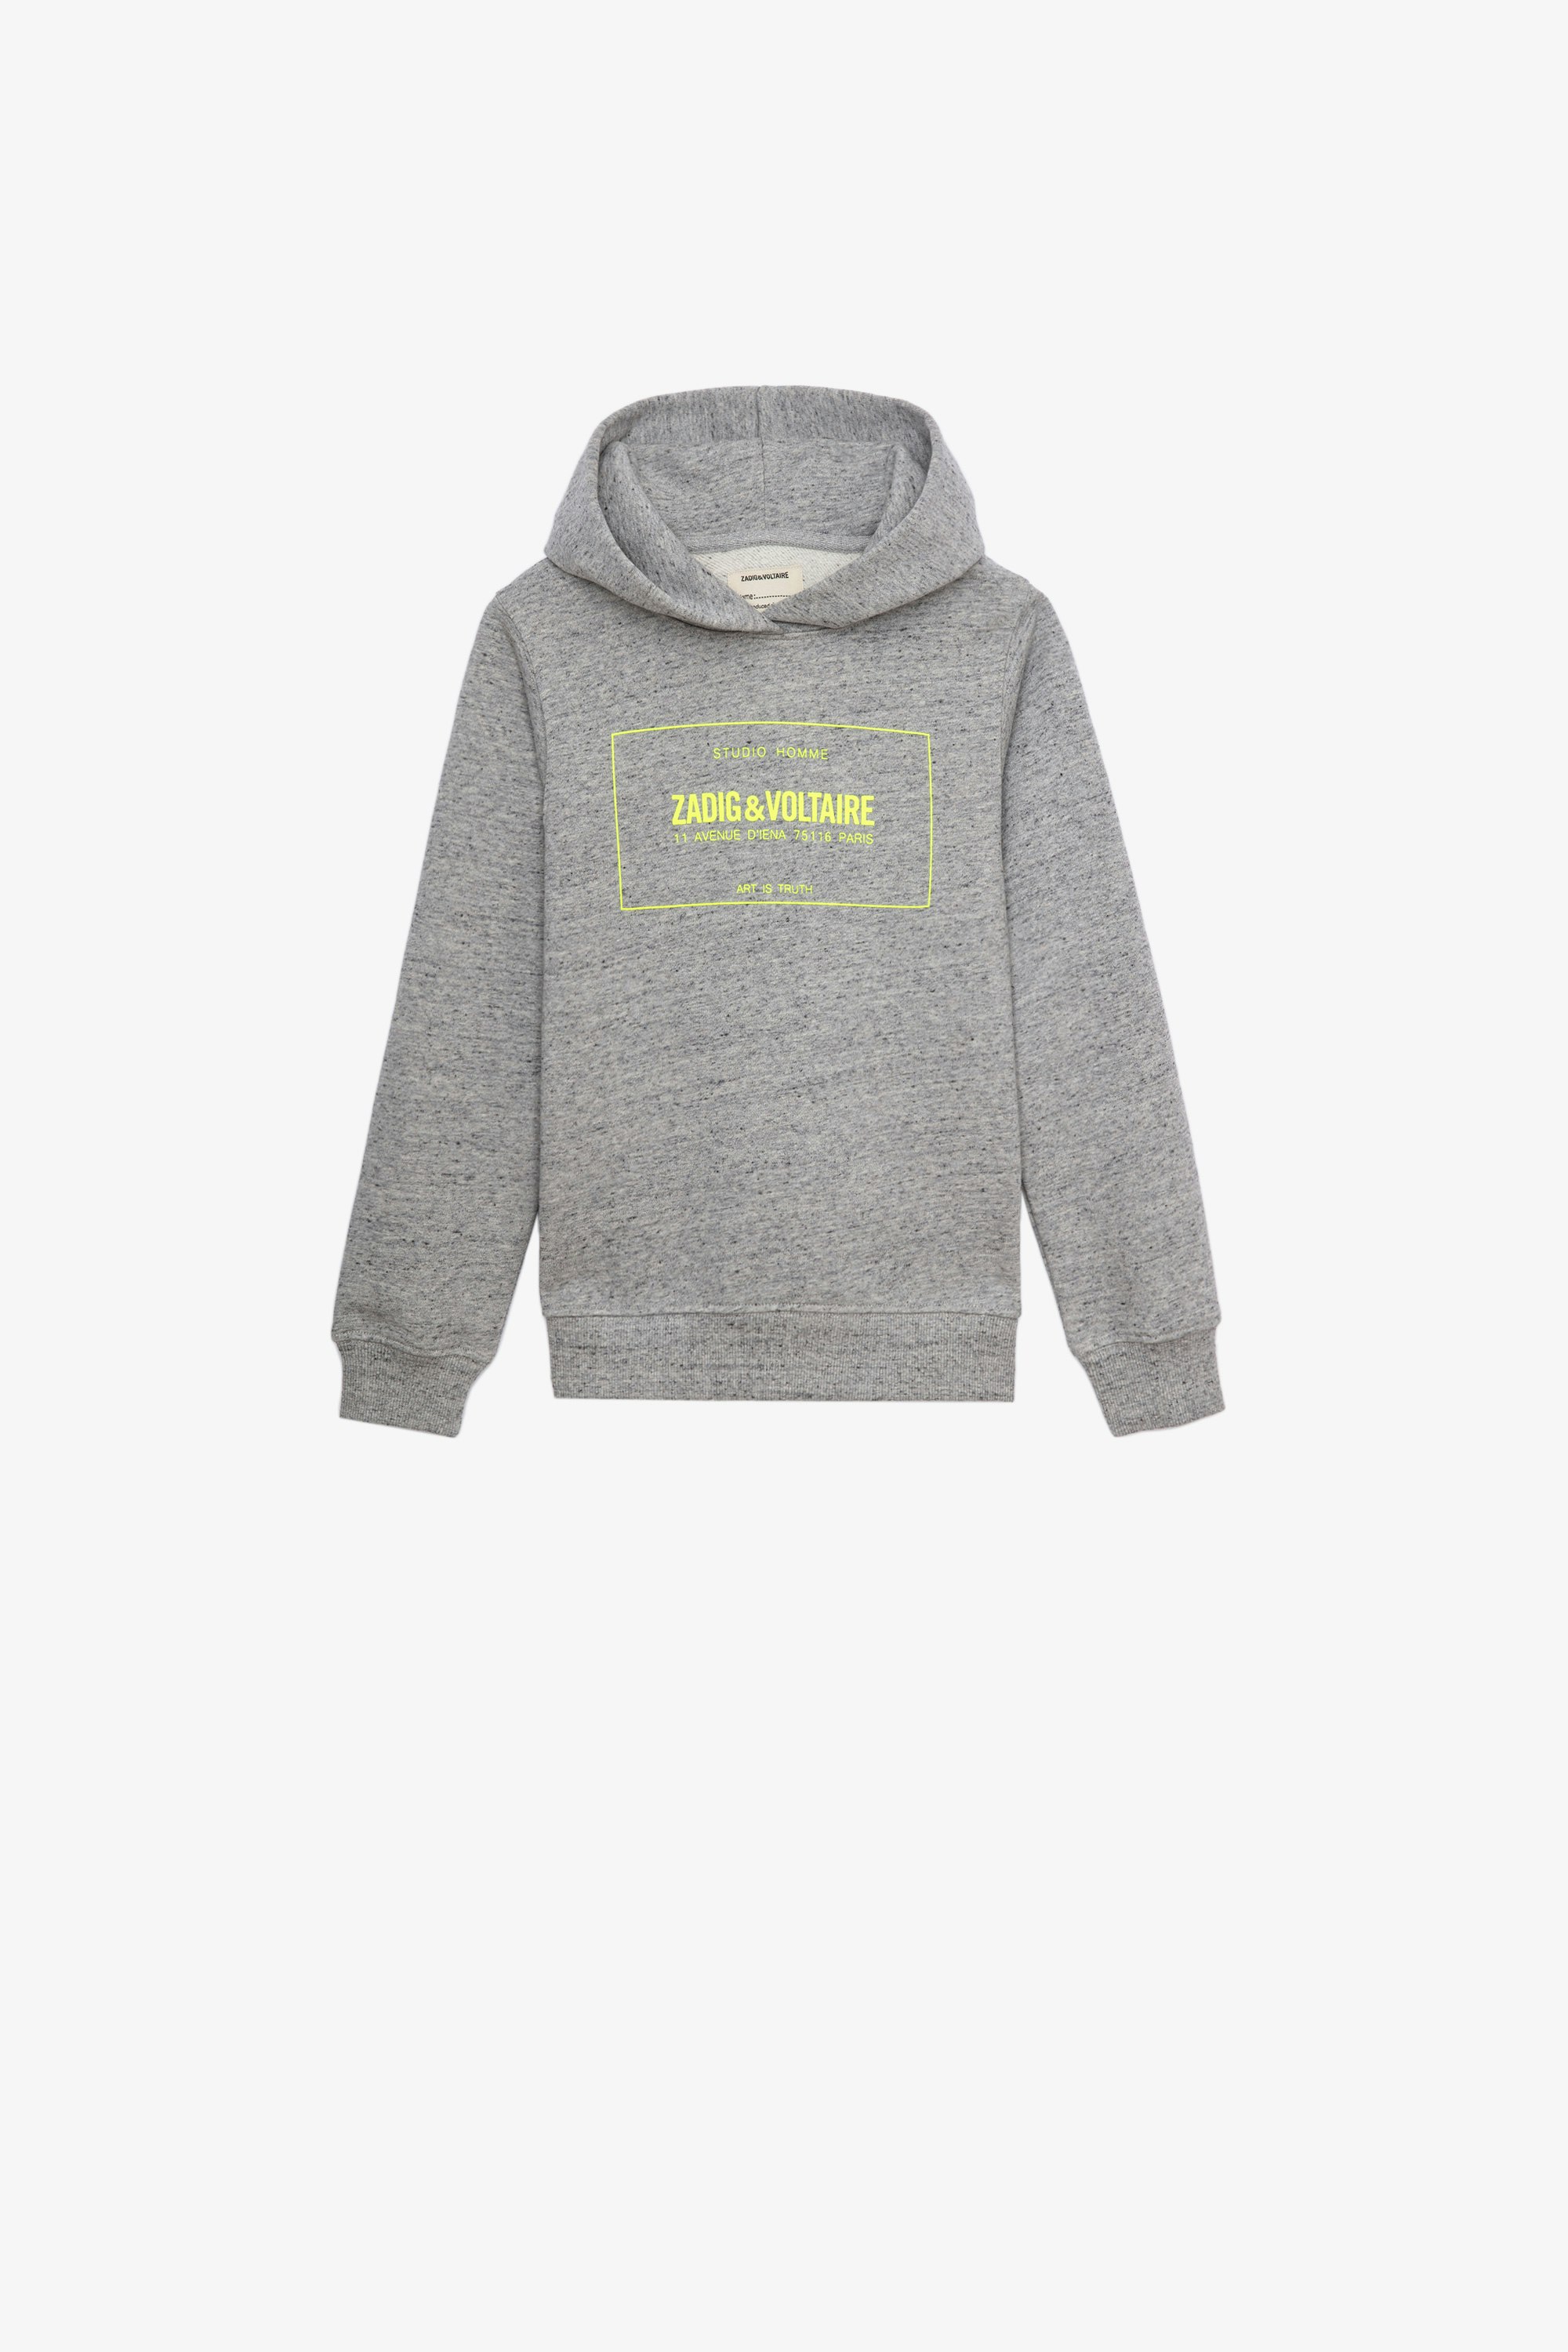 Alvin Children’s Sweatshirt Children’s grey cotton hoodie with contrasting yellow print 